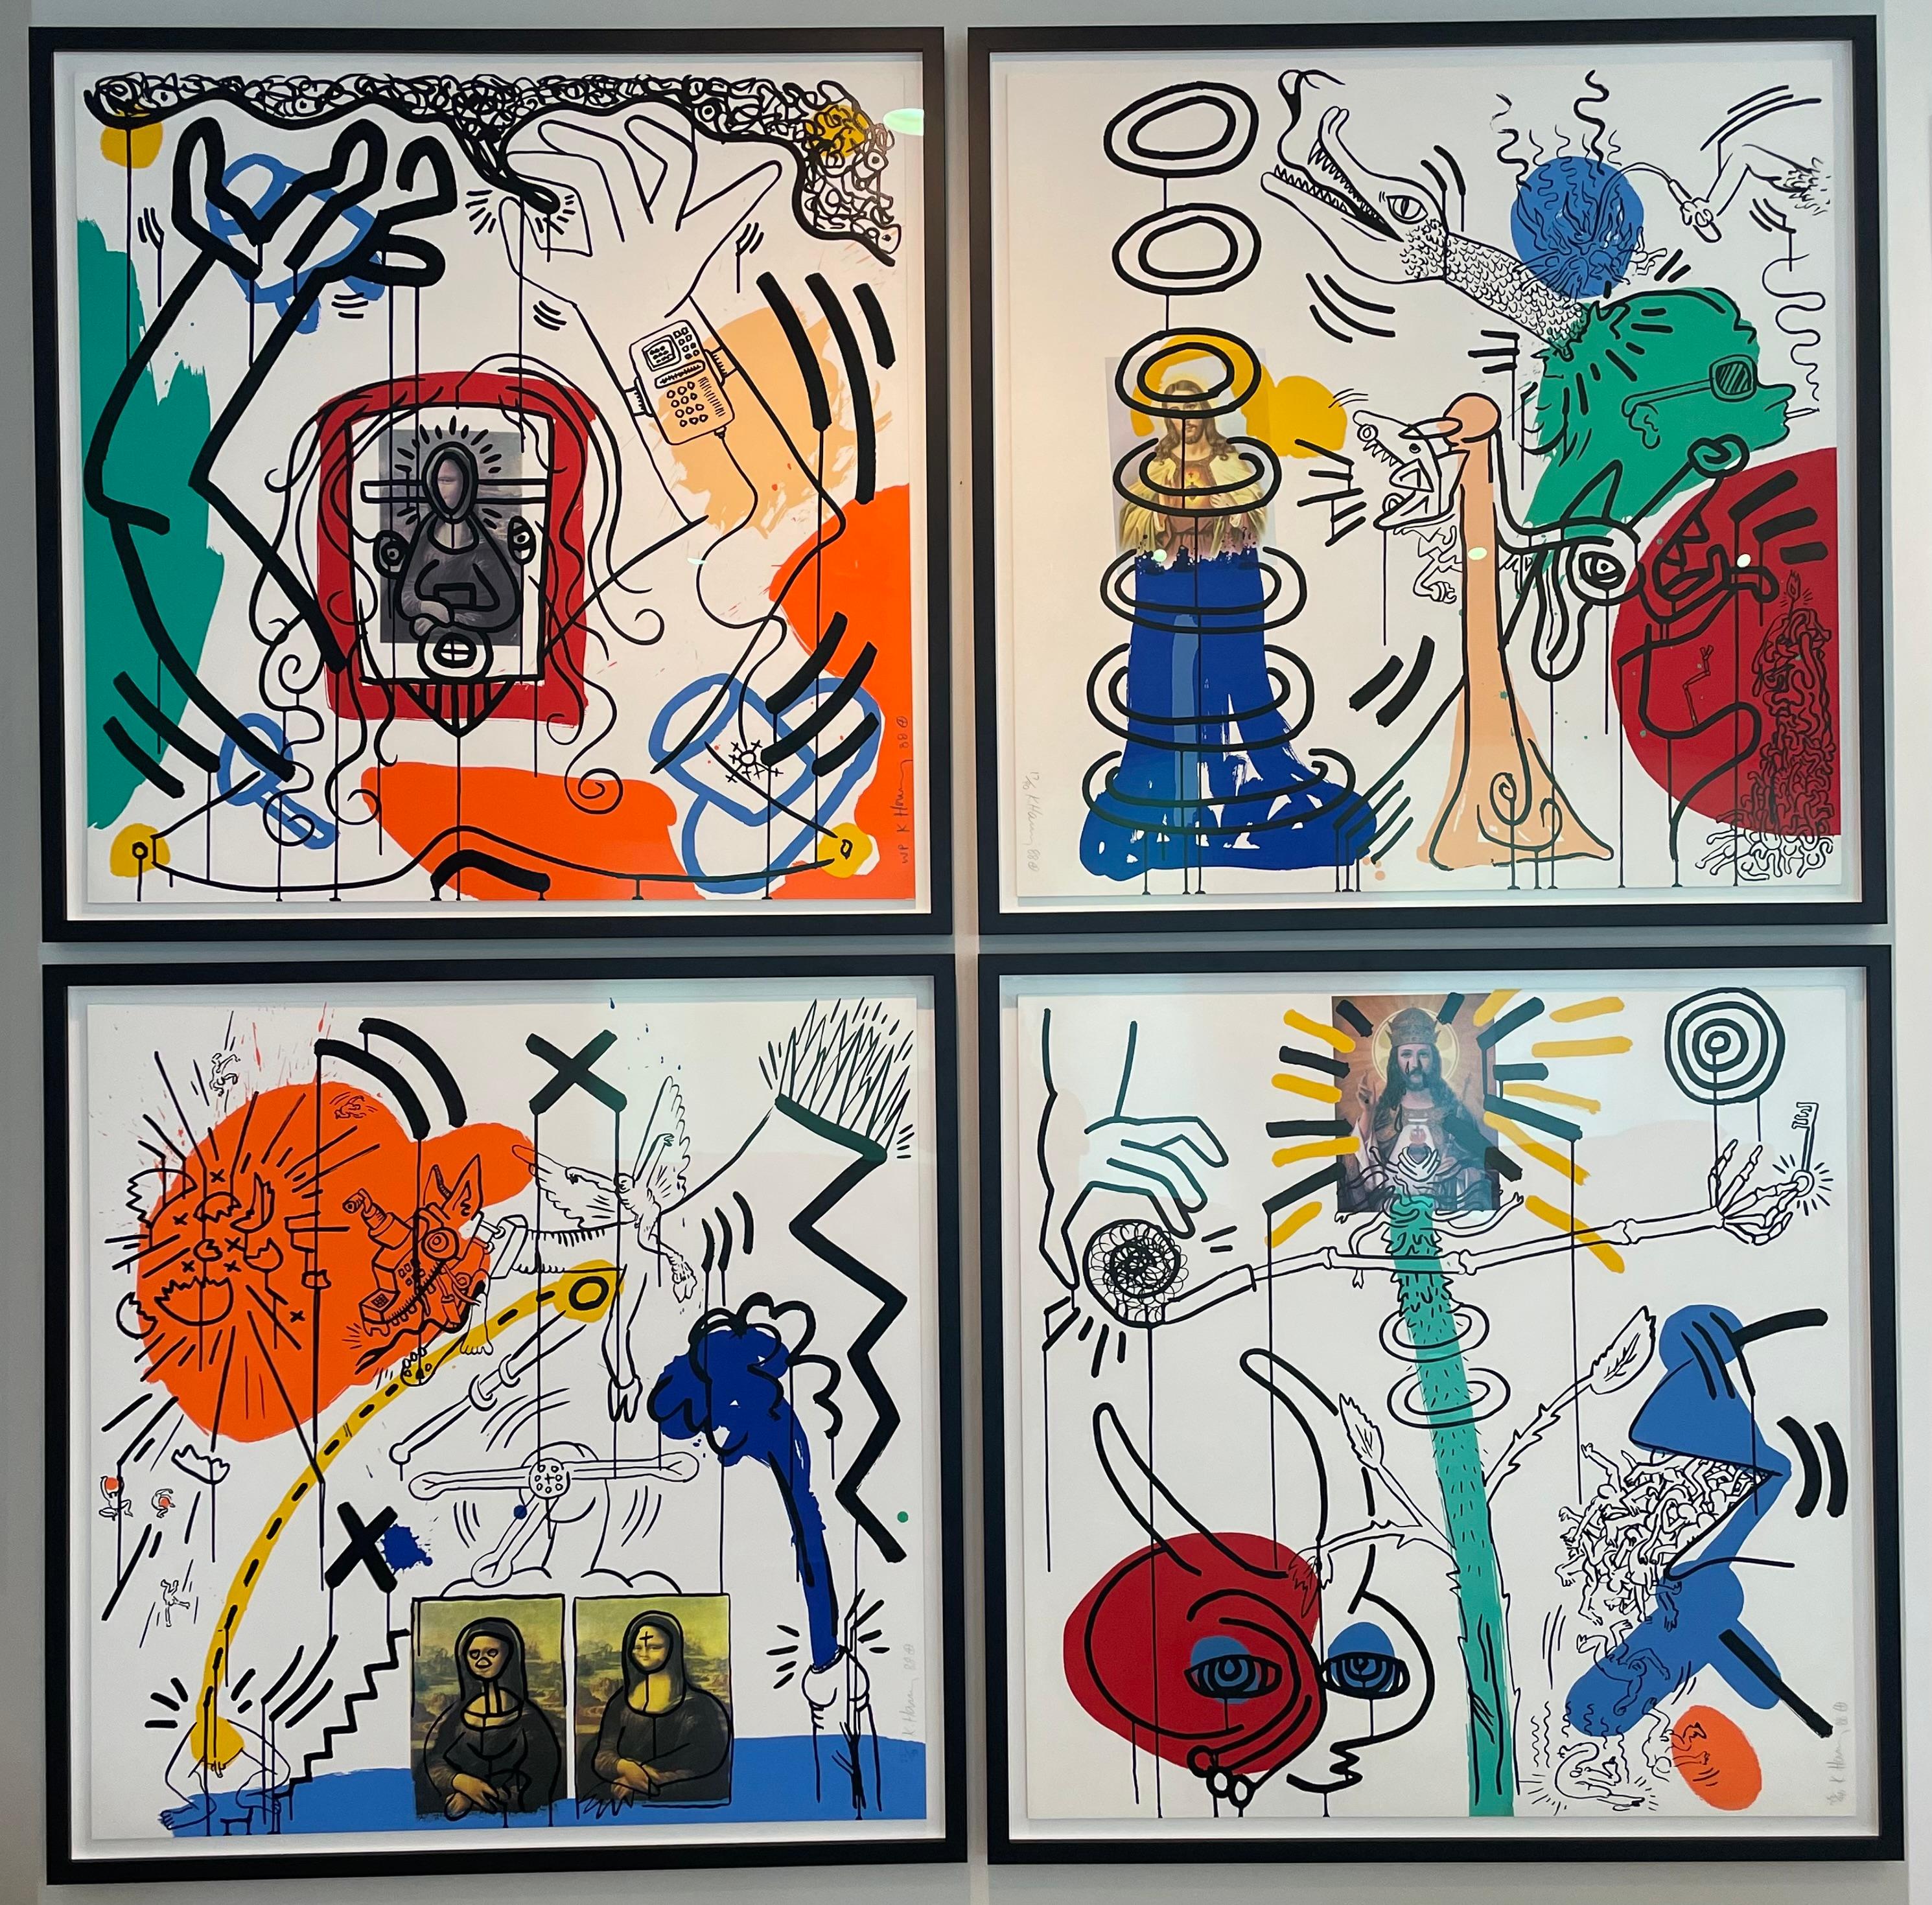 Künstler: Keith Haring 
Titel: Apokalypse 10
Größe:  38 × 38 in  96.5 × 96.5 cm
Medium: Farbsiebdruck auf Lenox Museum Board
Auflage: 75 von 90 
Jahr: 1988
Anmerkungen: Vom Künstler handsigniert, mit Bleistift signiert, nummeriert und datiert.